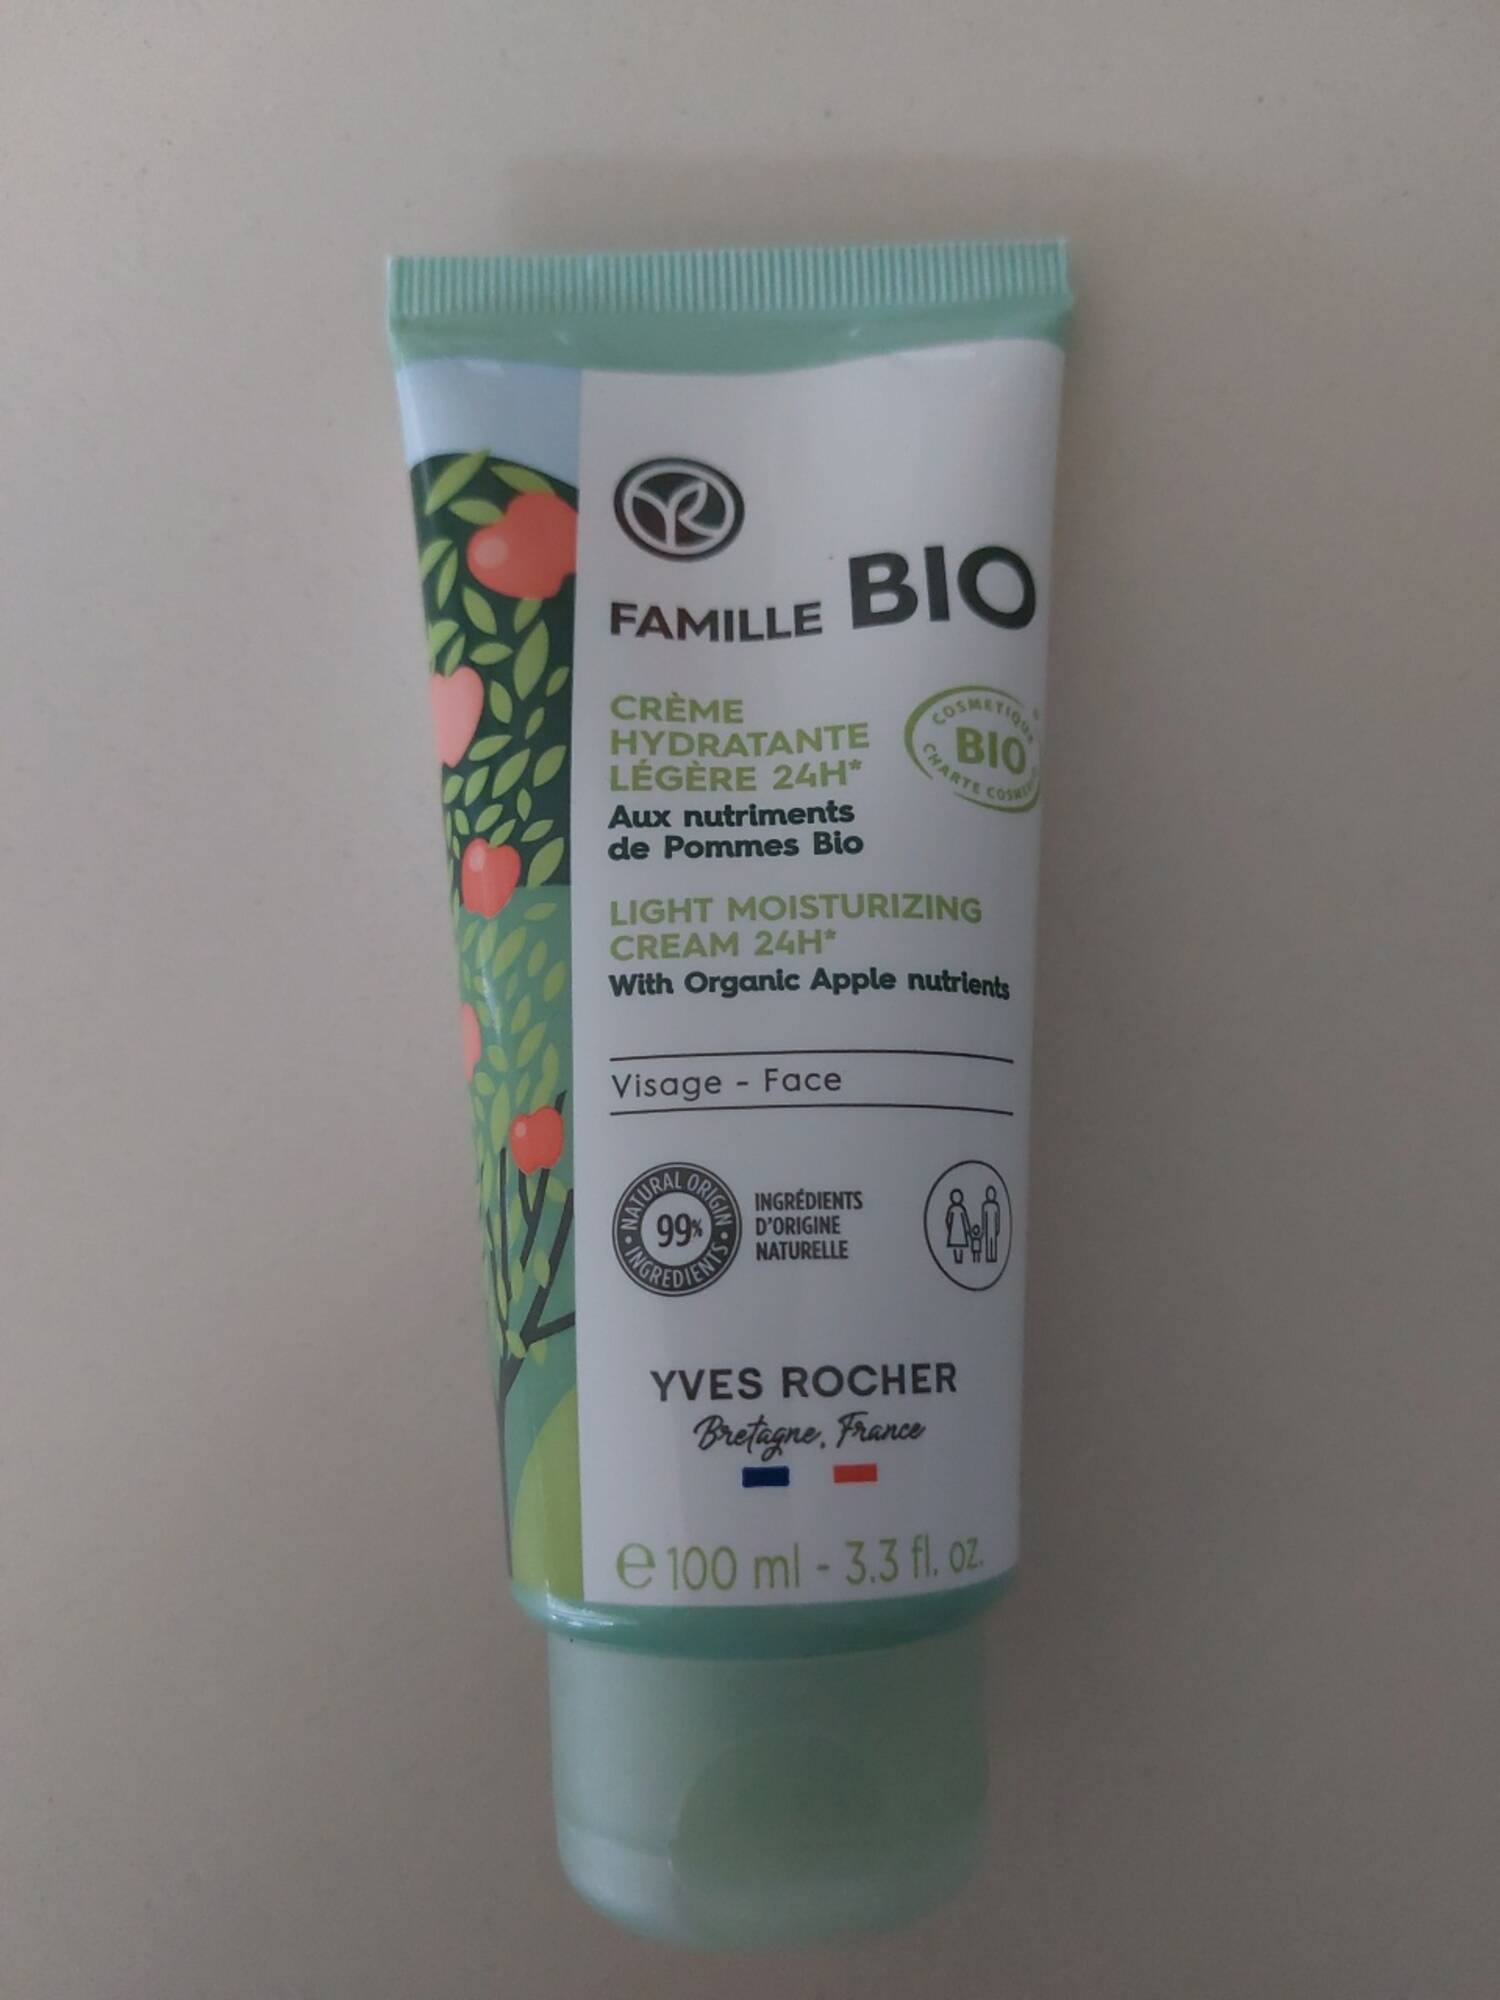 YVES ROCHER - Famille bio - Crème hydratante légère 24h